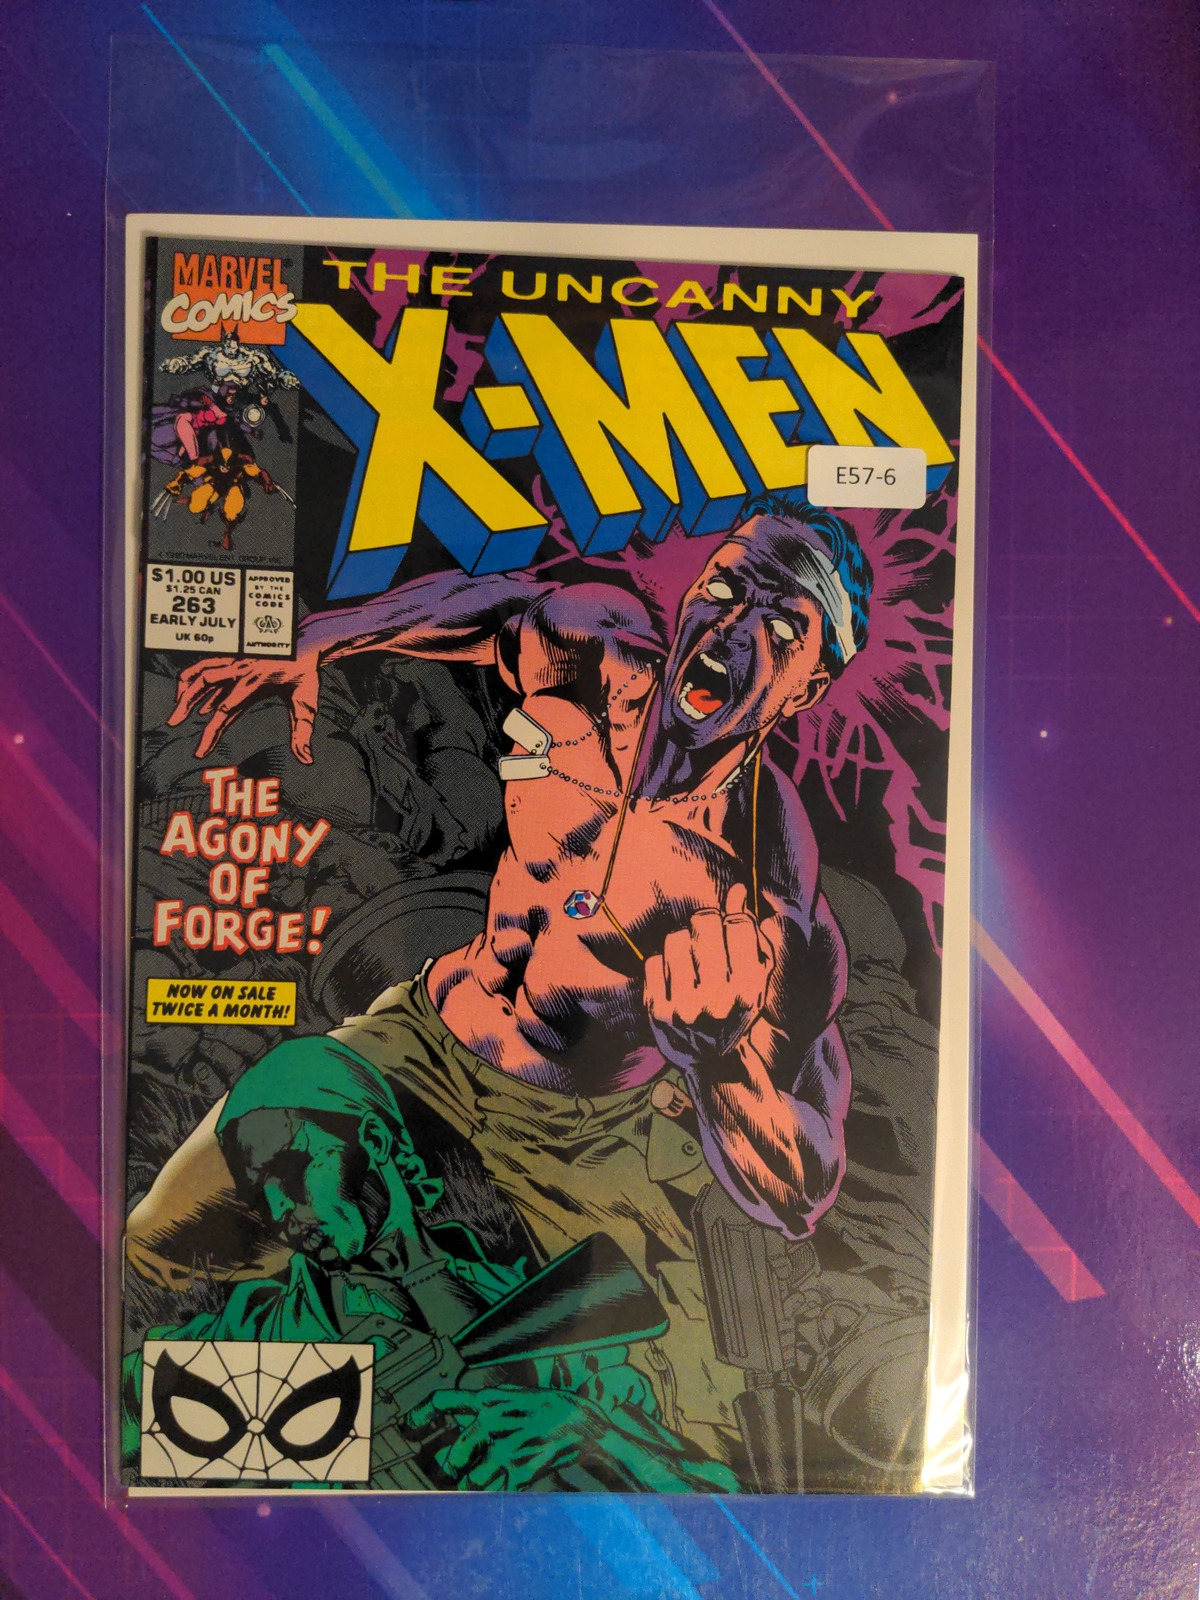 UNCANNY X-MEN #263 VOL. 1 9.0 MARVEL COMIC BOOK E57-6